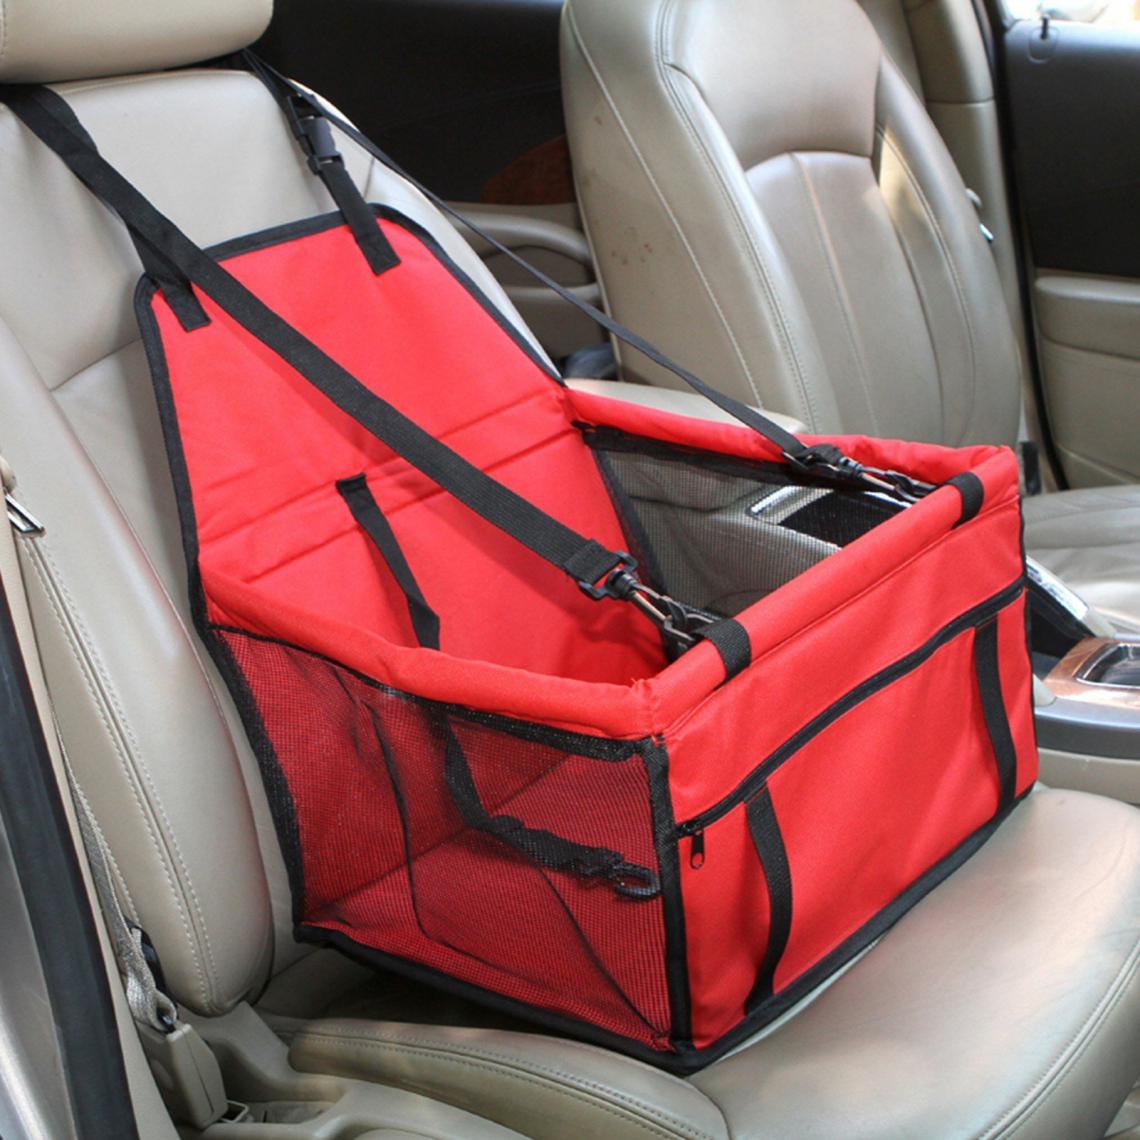 Justgreenbox - Rehausseur de siège d'auto pour chien avec ceinture de sécurité, Noir, S - Equipement de transport pour chat